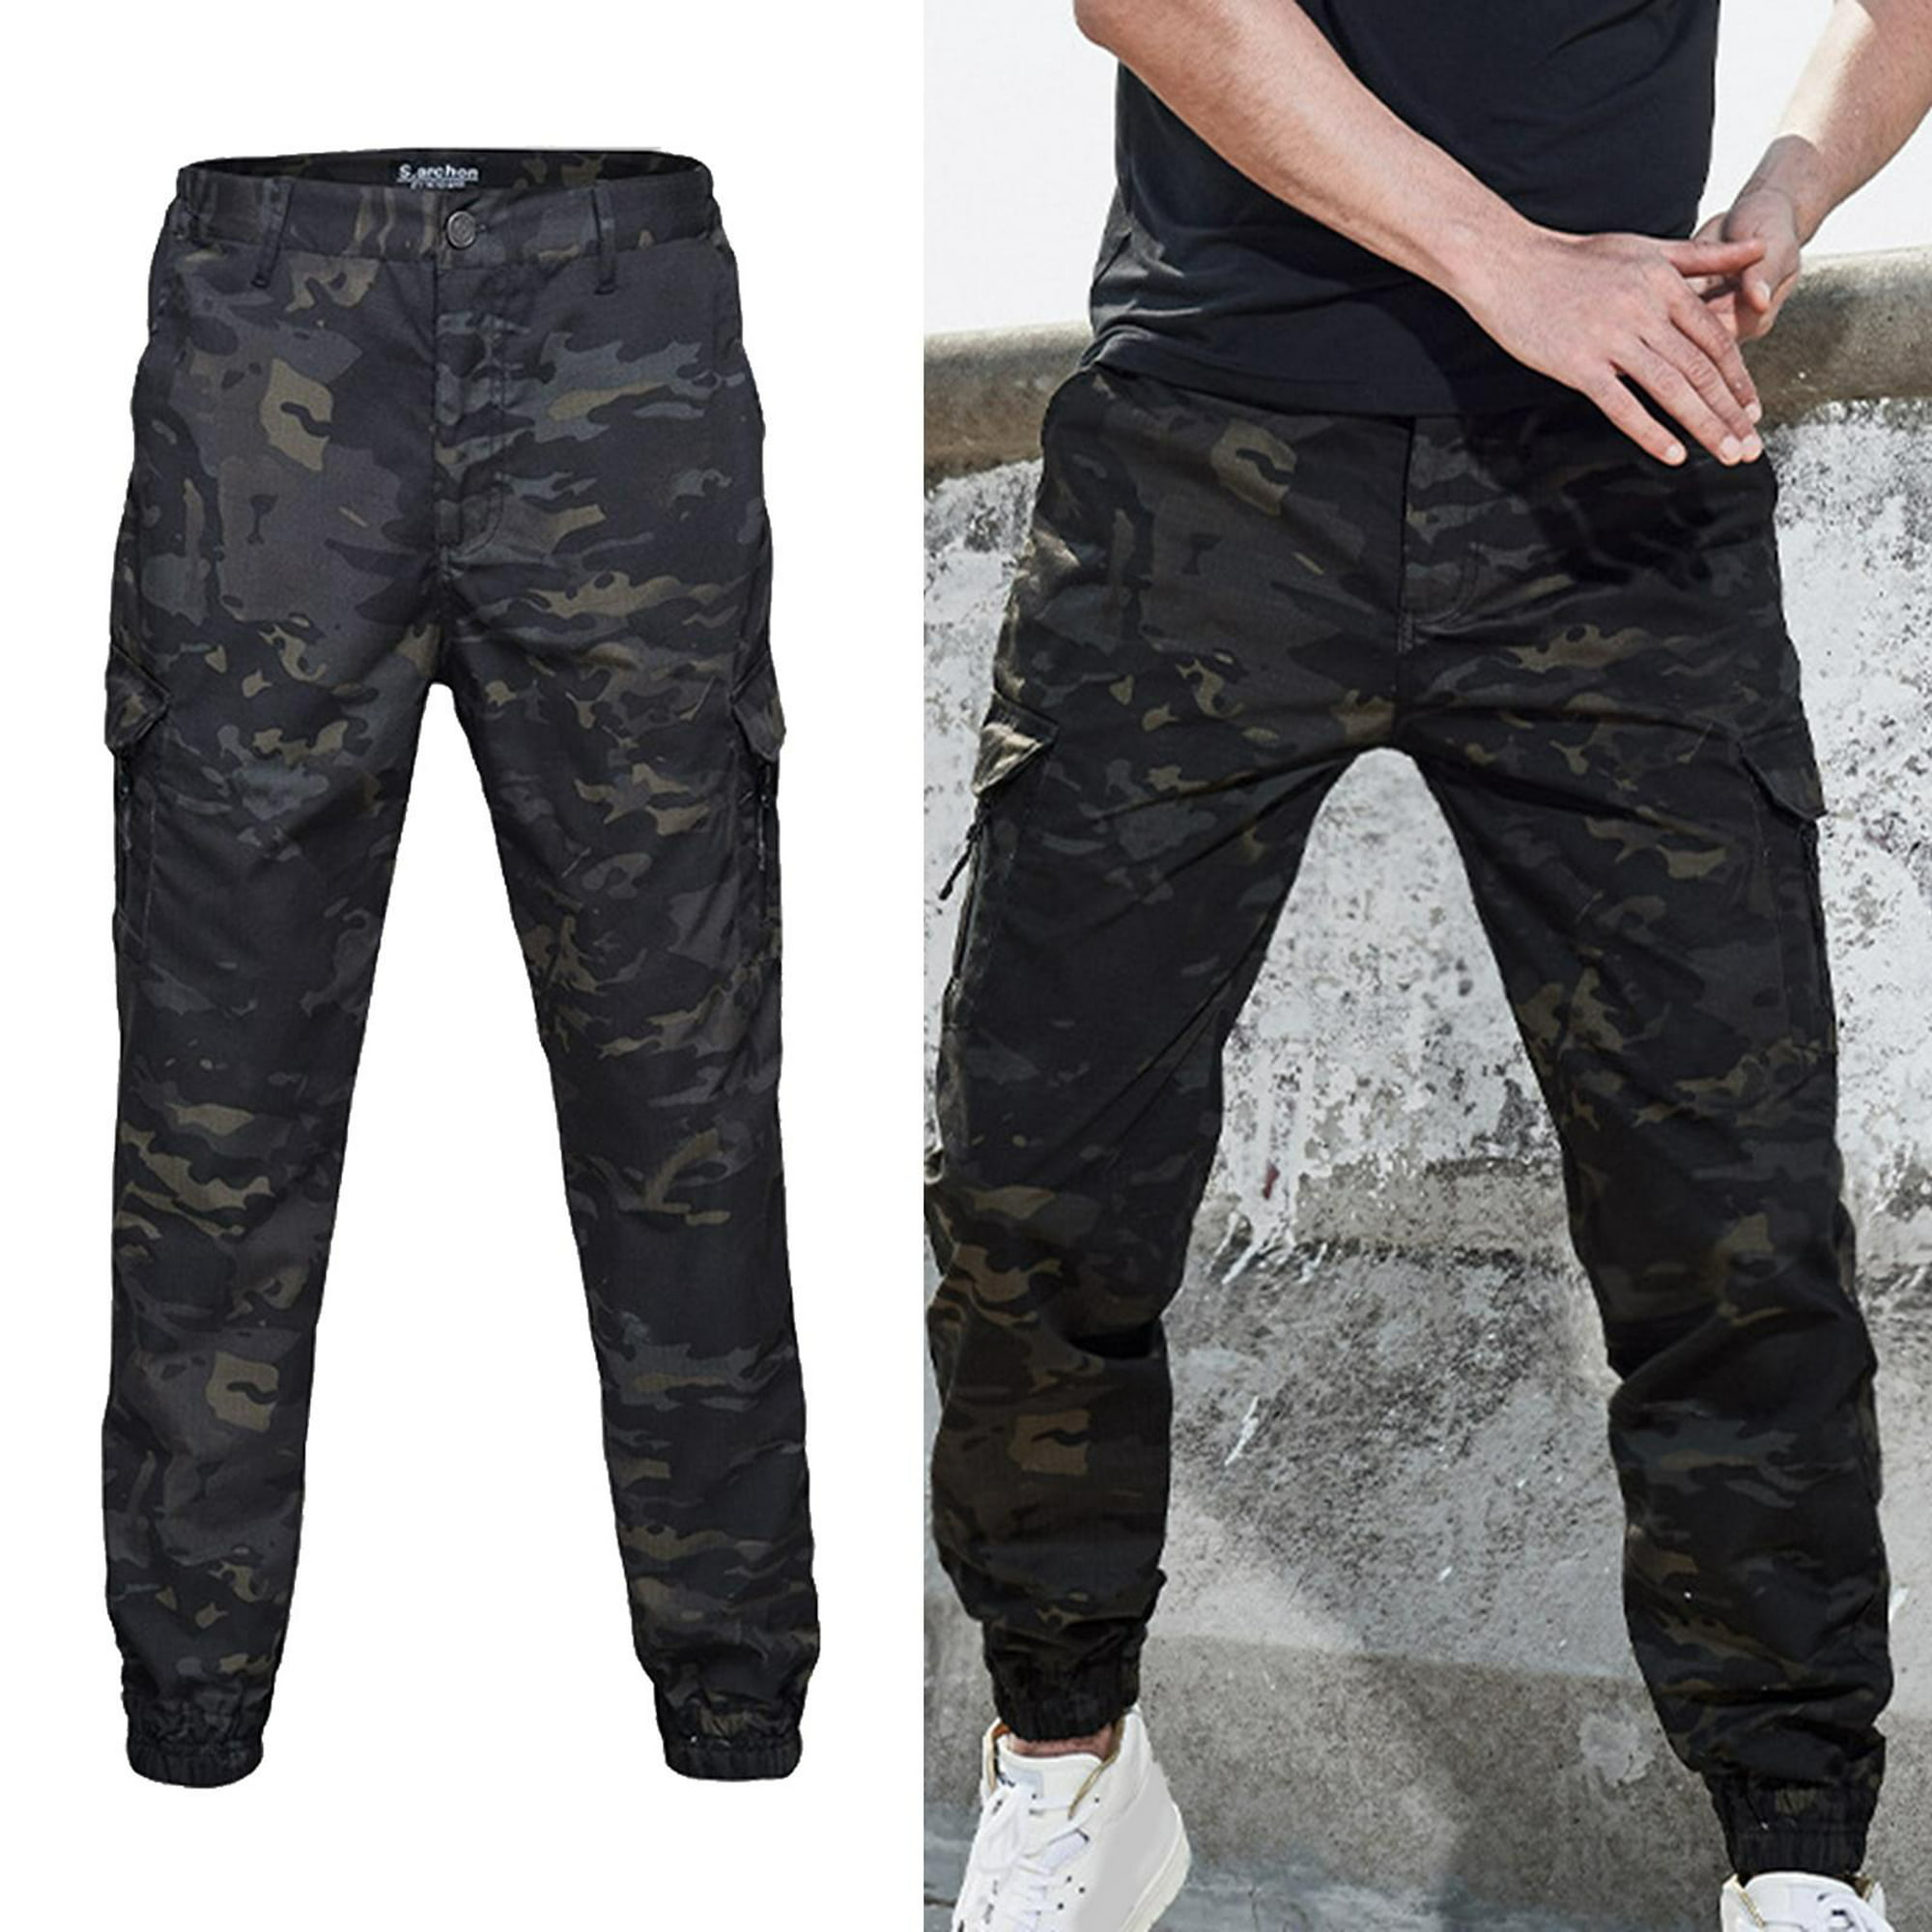 Pantalones cargo hombre - Nueva colección streetwear